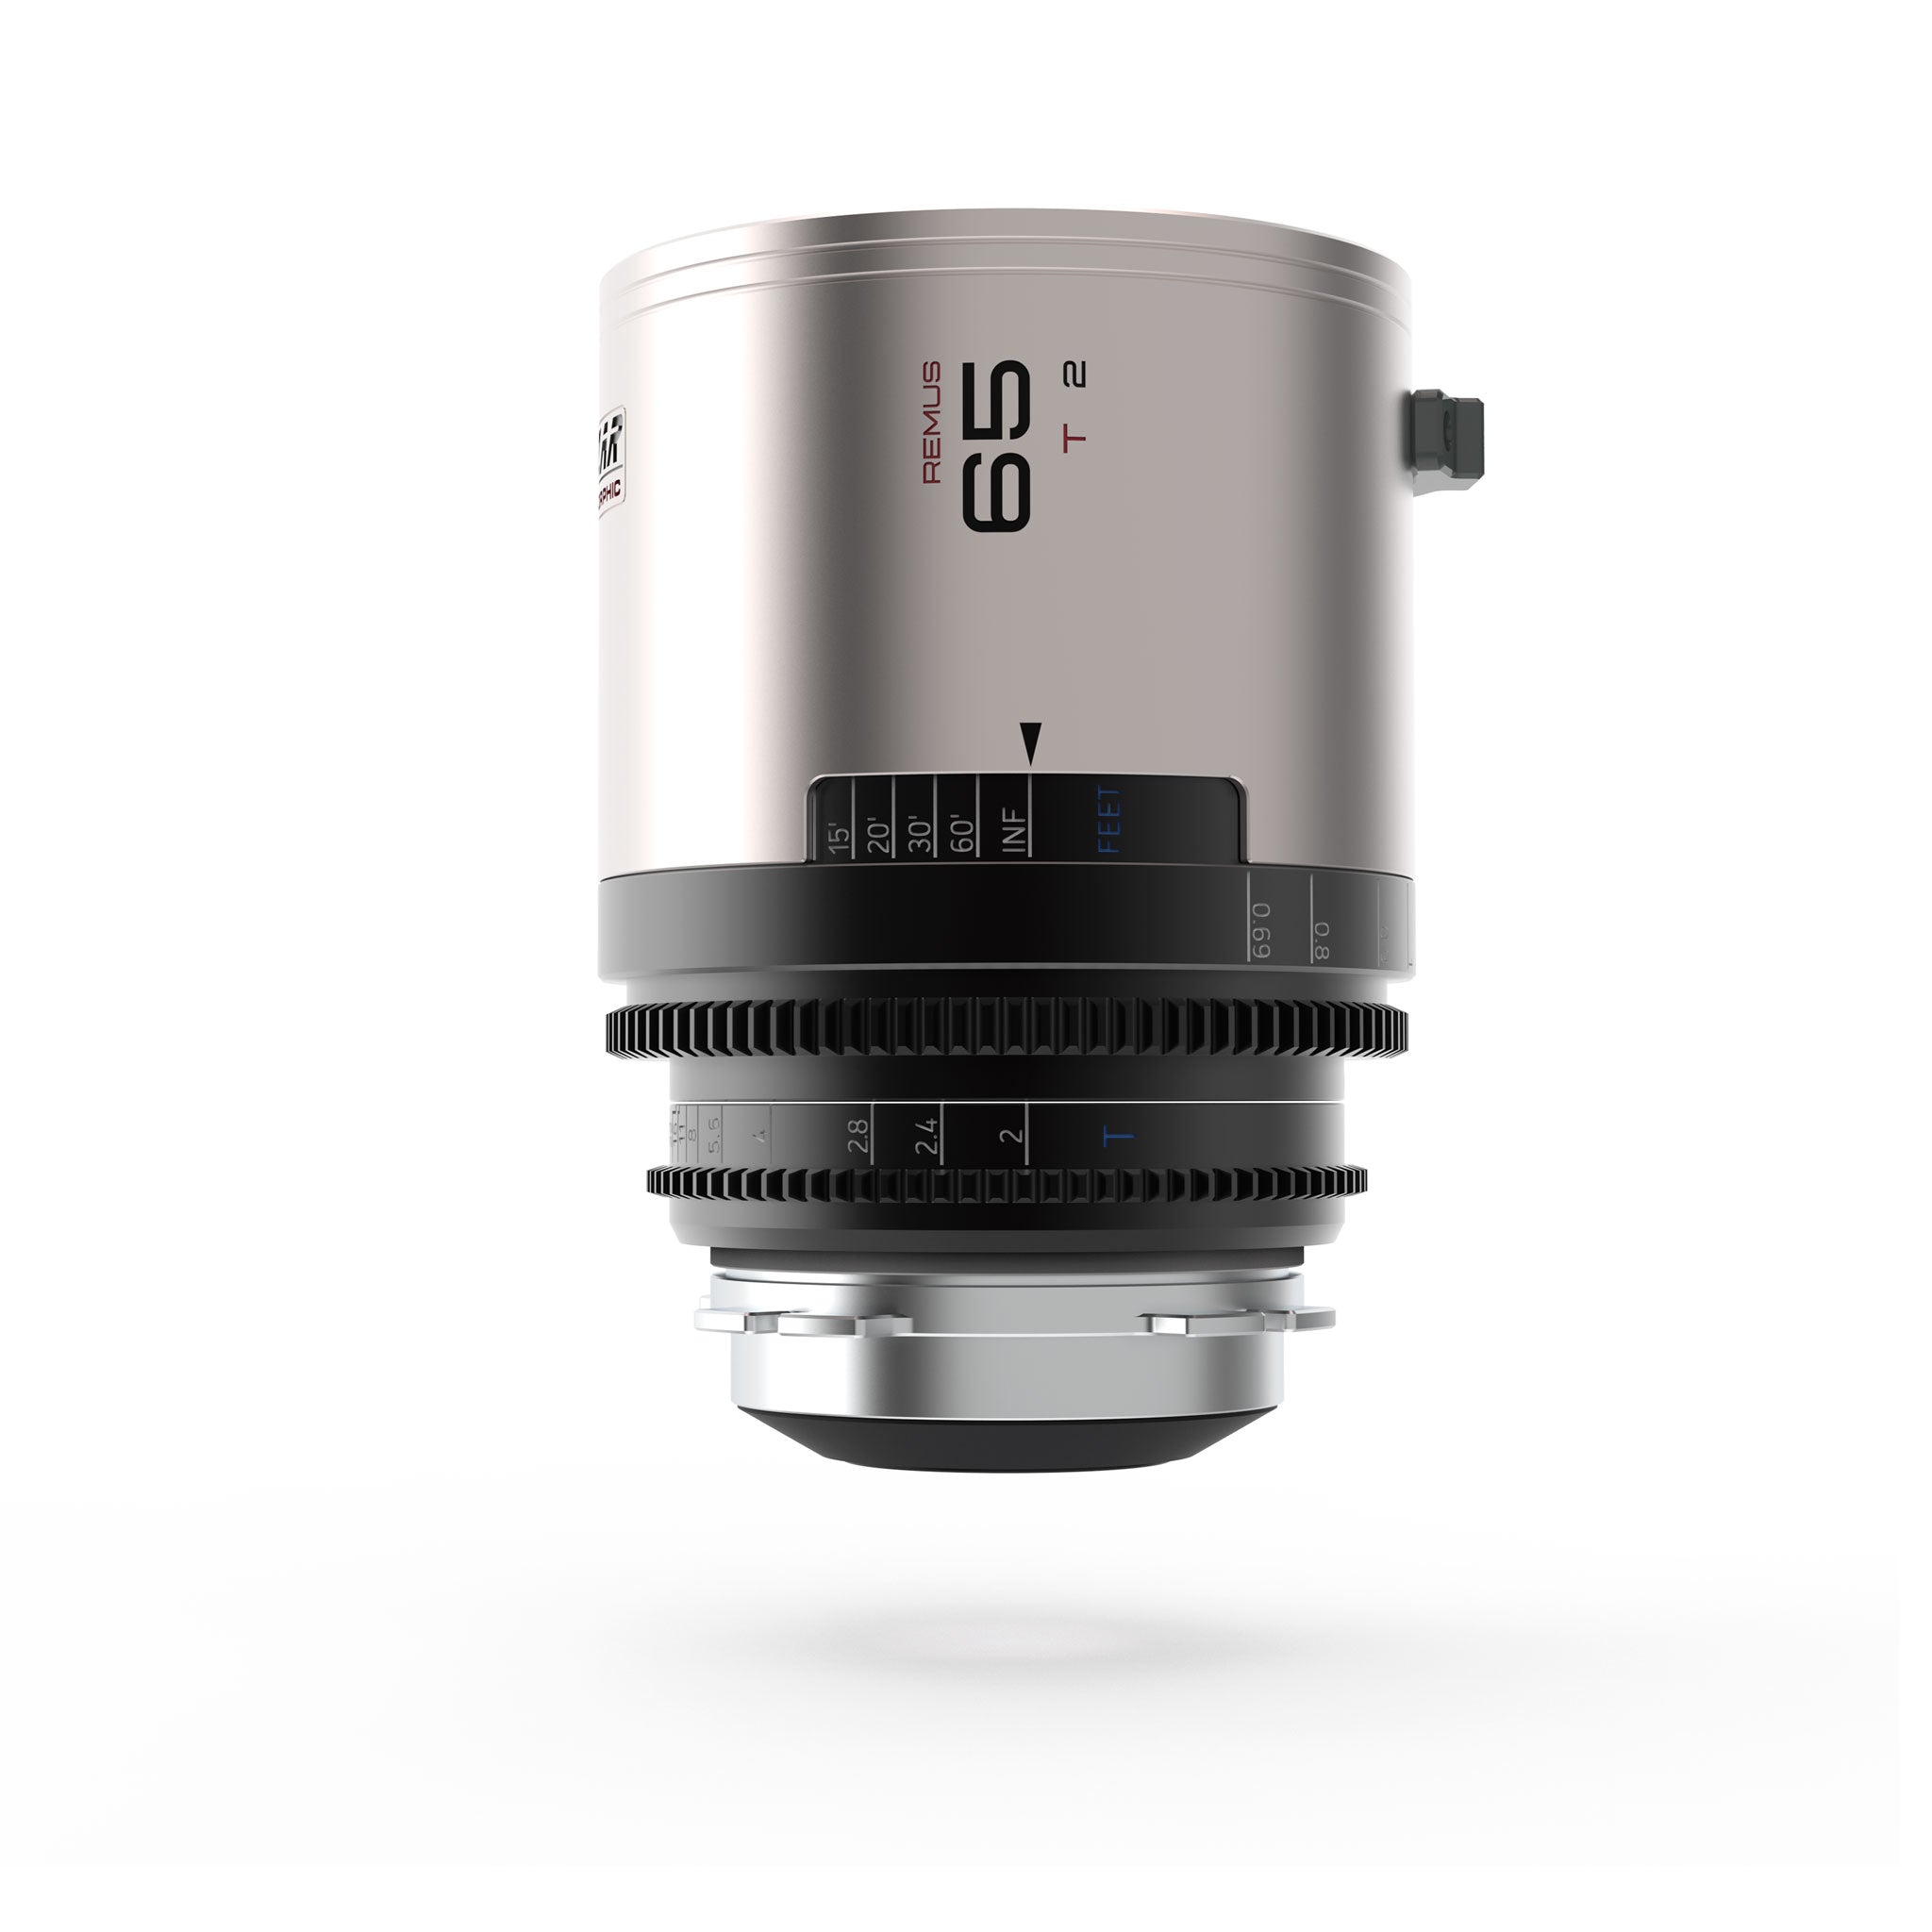 Remus 65mm T2.0 1.5X Full Frame Anamorphic Lens PRE-ORDER